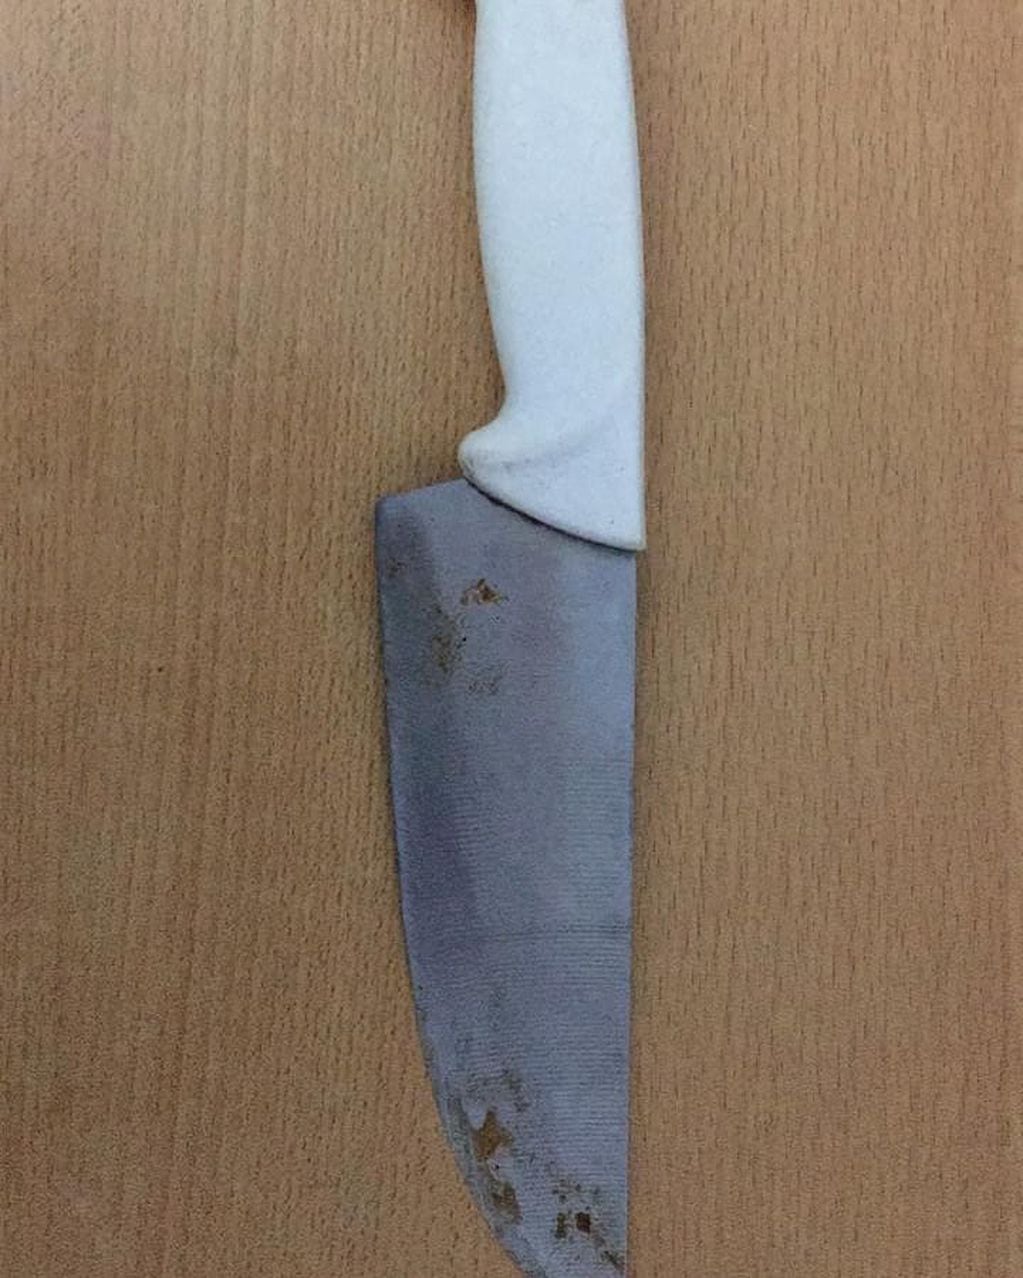 La victima expresó que fue amenazada con un cuchillo de gran tamaño.